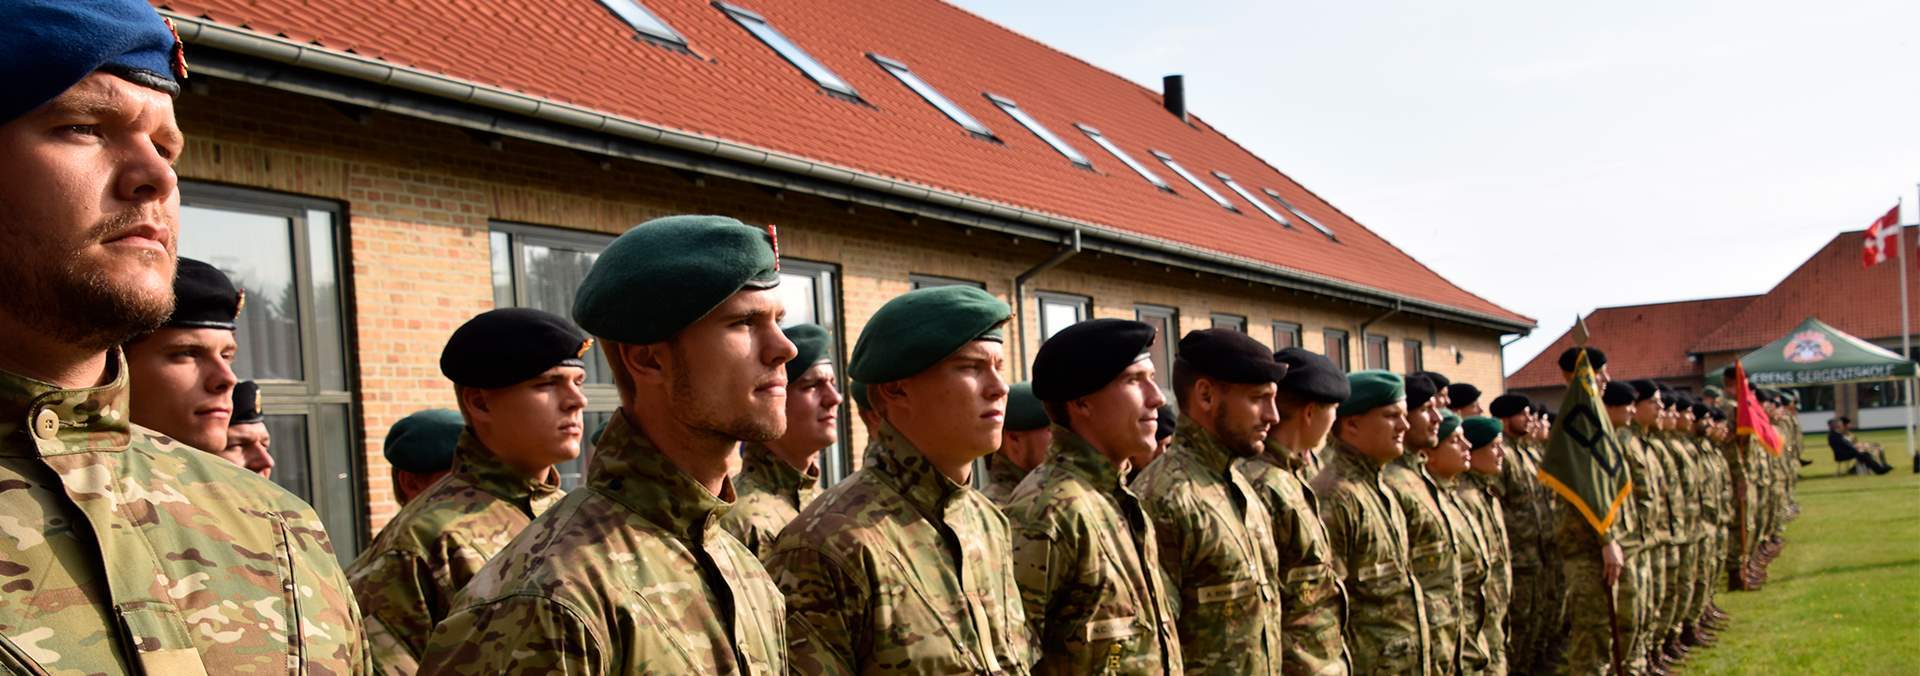 Soldater ved 107-års parade for Hærens Sergentskole